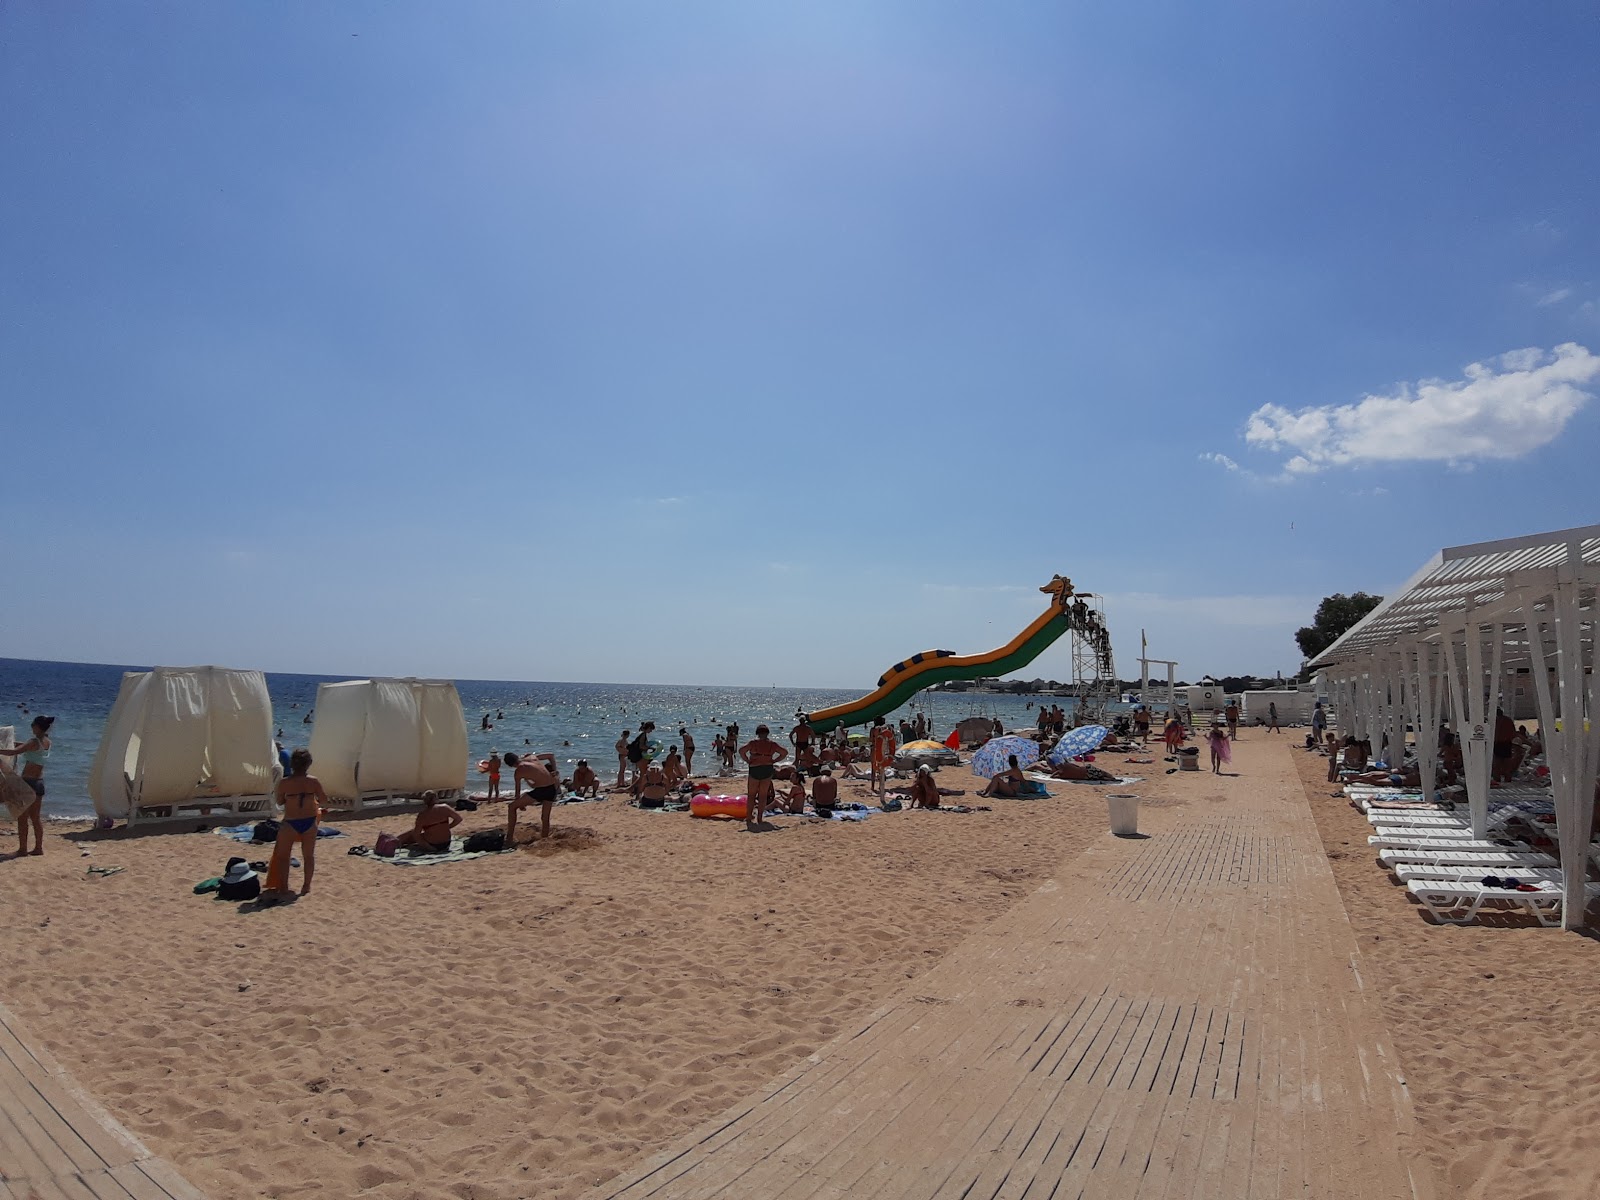 Oren-Crimea beach'in fotoğrafı kısmen otel alanı